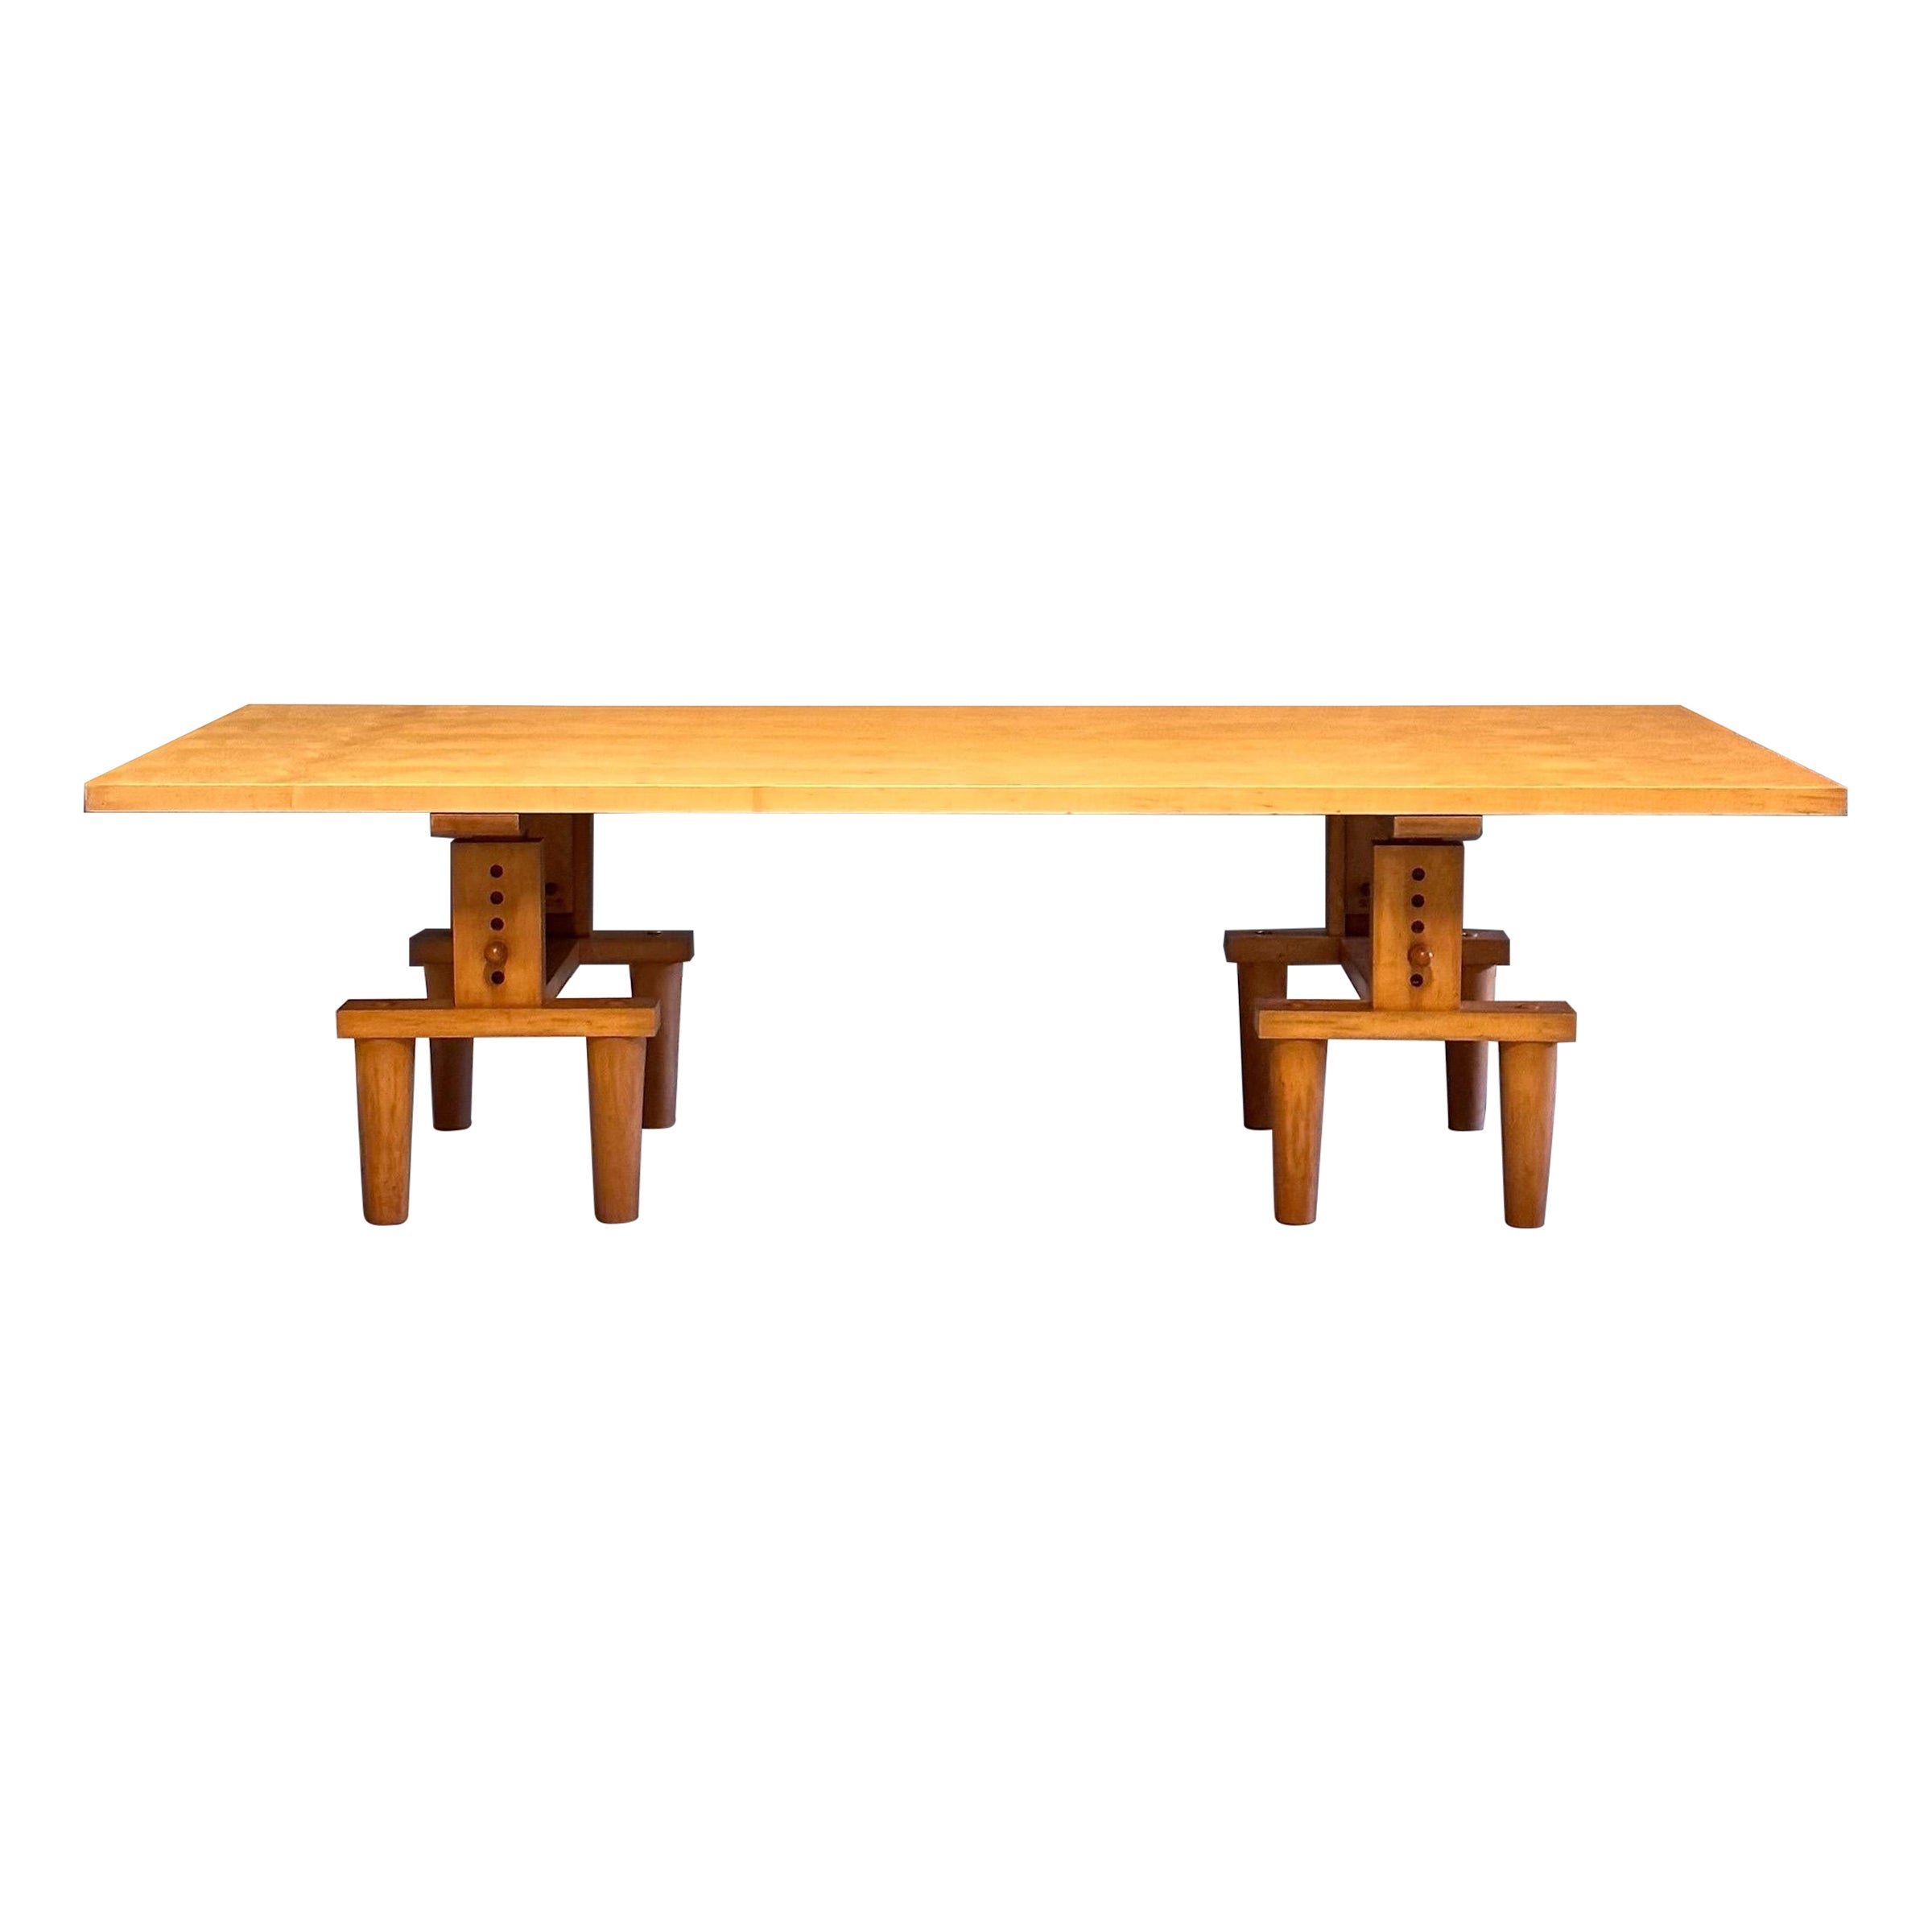 Rare "Bramante" Table by Achille and Pier Giacomo Castiglioni for Zanotta, 1950s For Sale